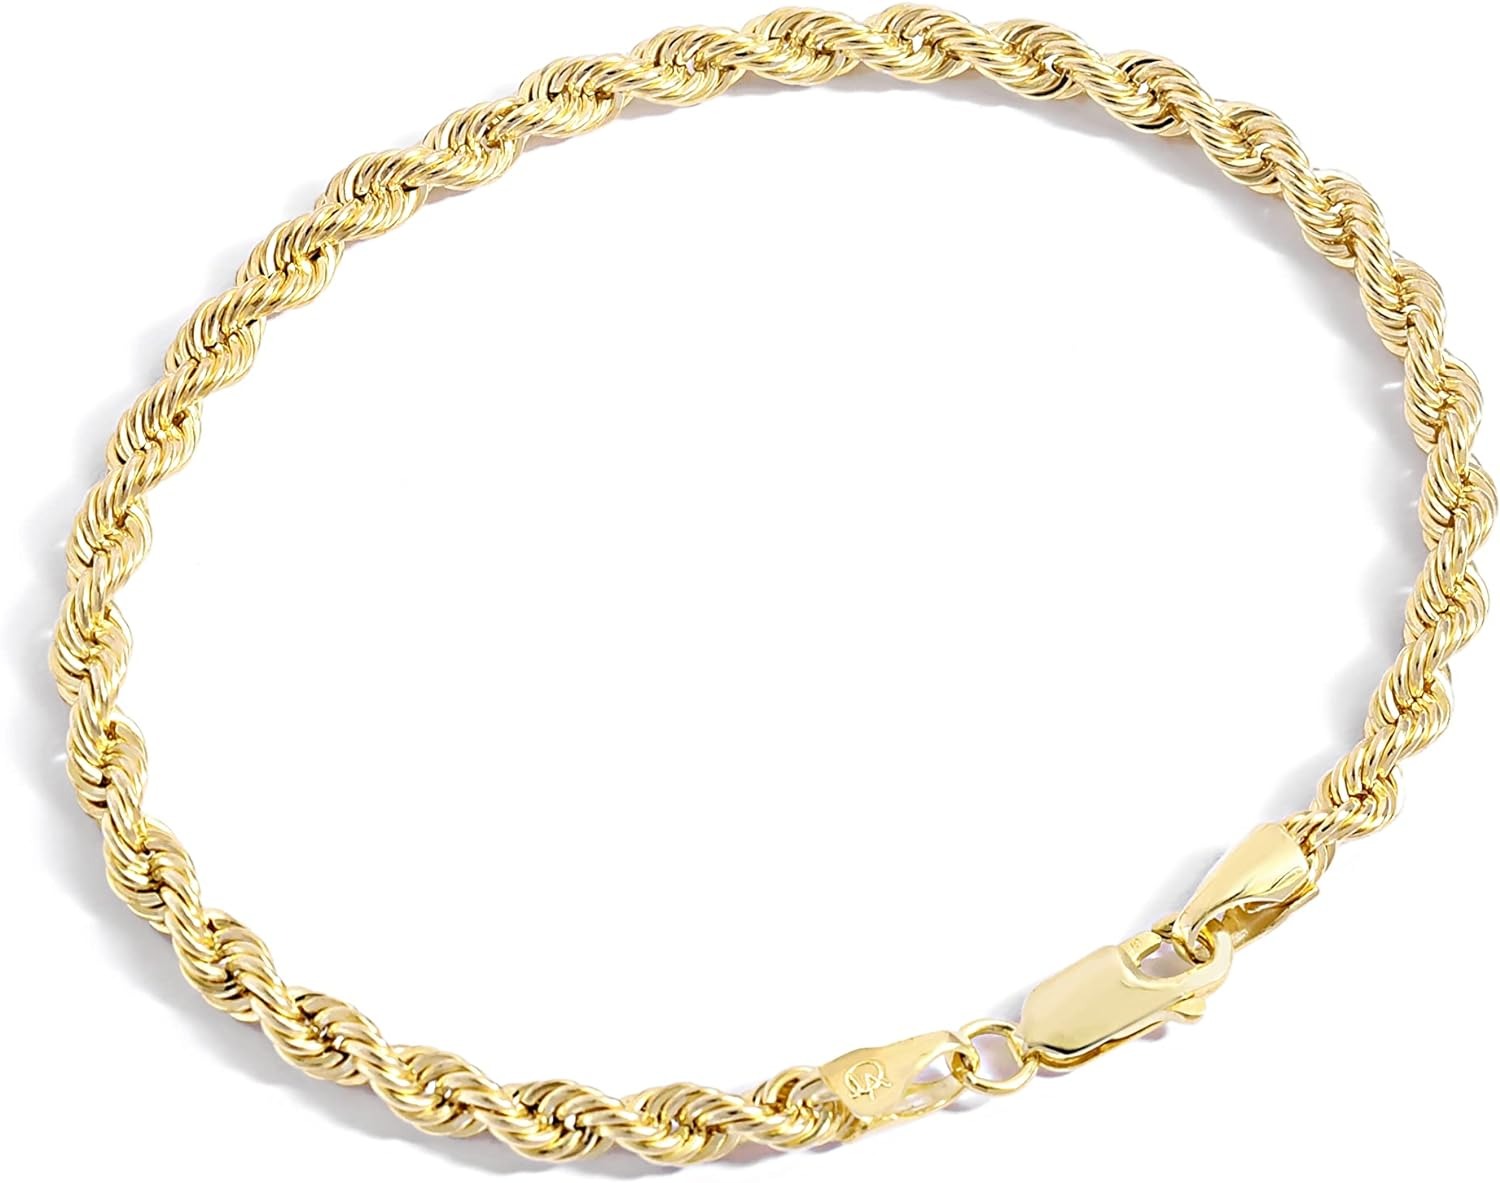 Colección de pulseras de cadena rellenas de oro de Jewelry Atelier - Pulseras de cadena de cuerda rellenas de oro amarillo macizo de 14 quilates para mujeres y hombres con diferentes tamaños (2,7 mm, 3,8 mm)